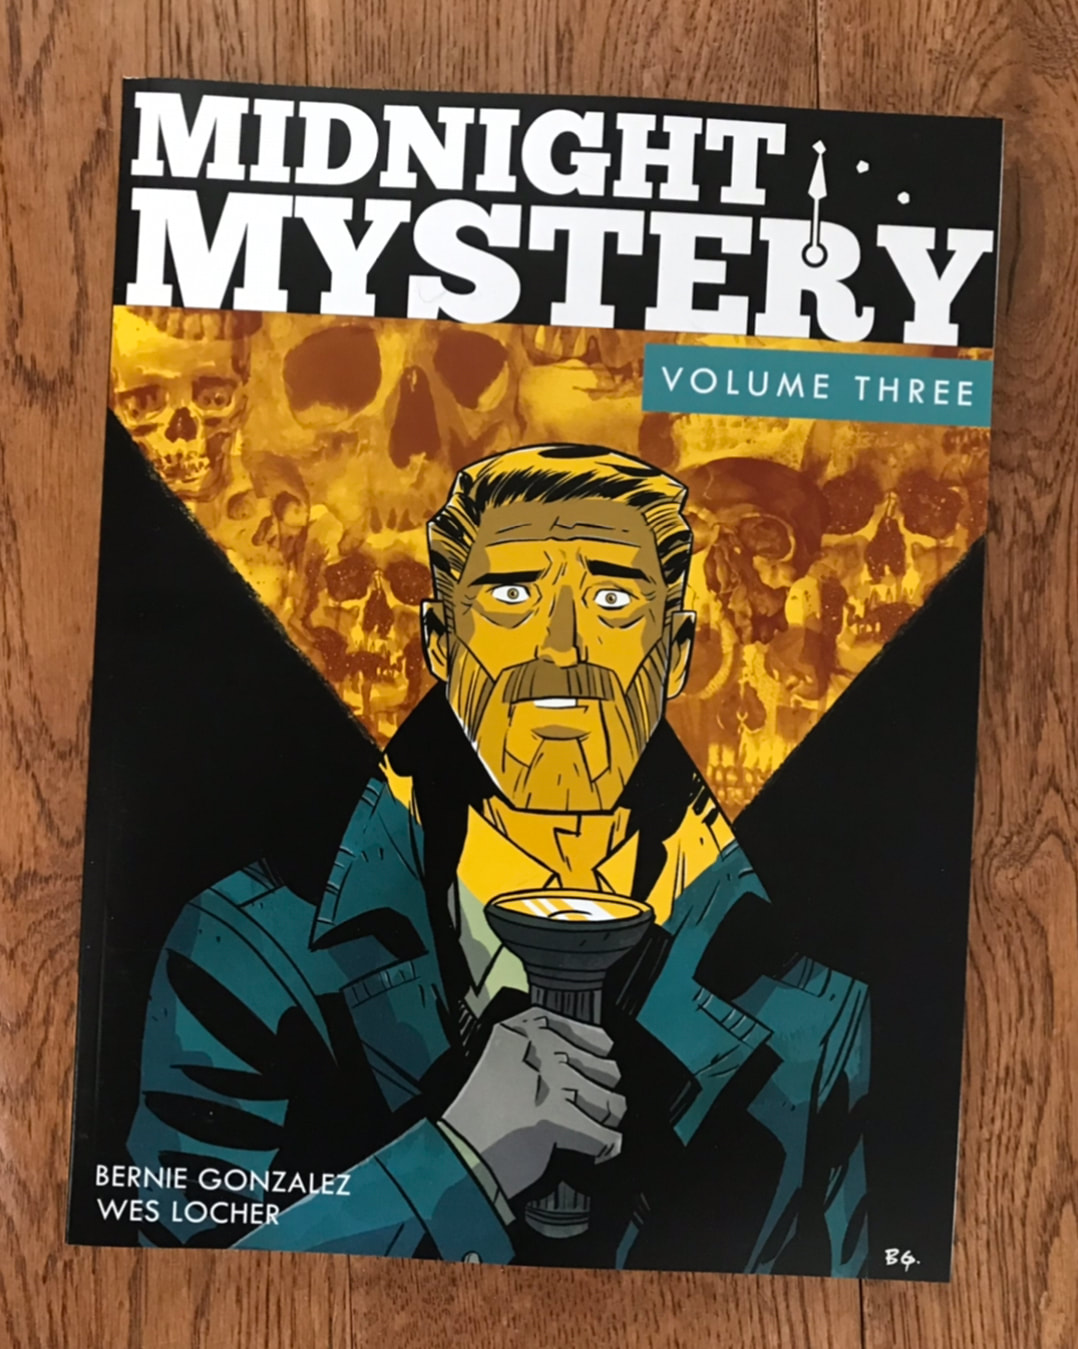 Midnight Mystery Reel Evil Part 1 - MIDNIGHT MYSTERY